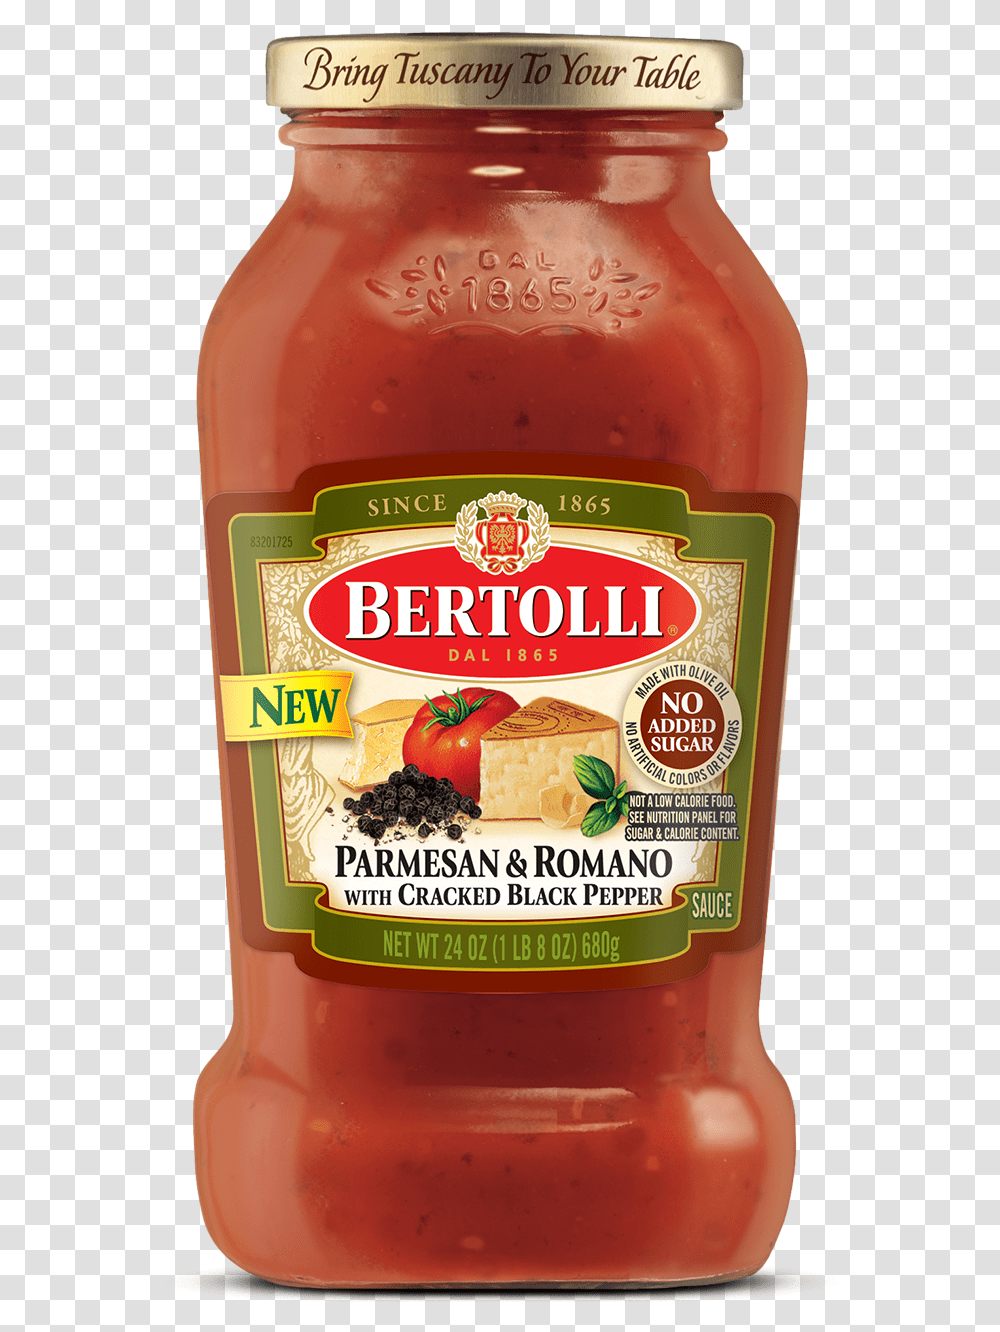 Bertolli Marinara Sauce, Food, Ketchup, Relish, Pickle Transparent Png